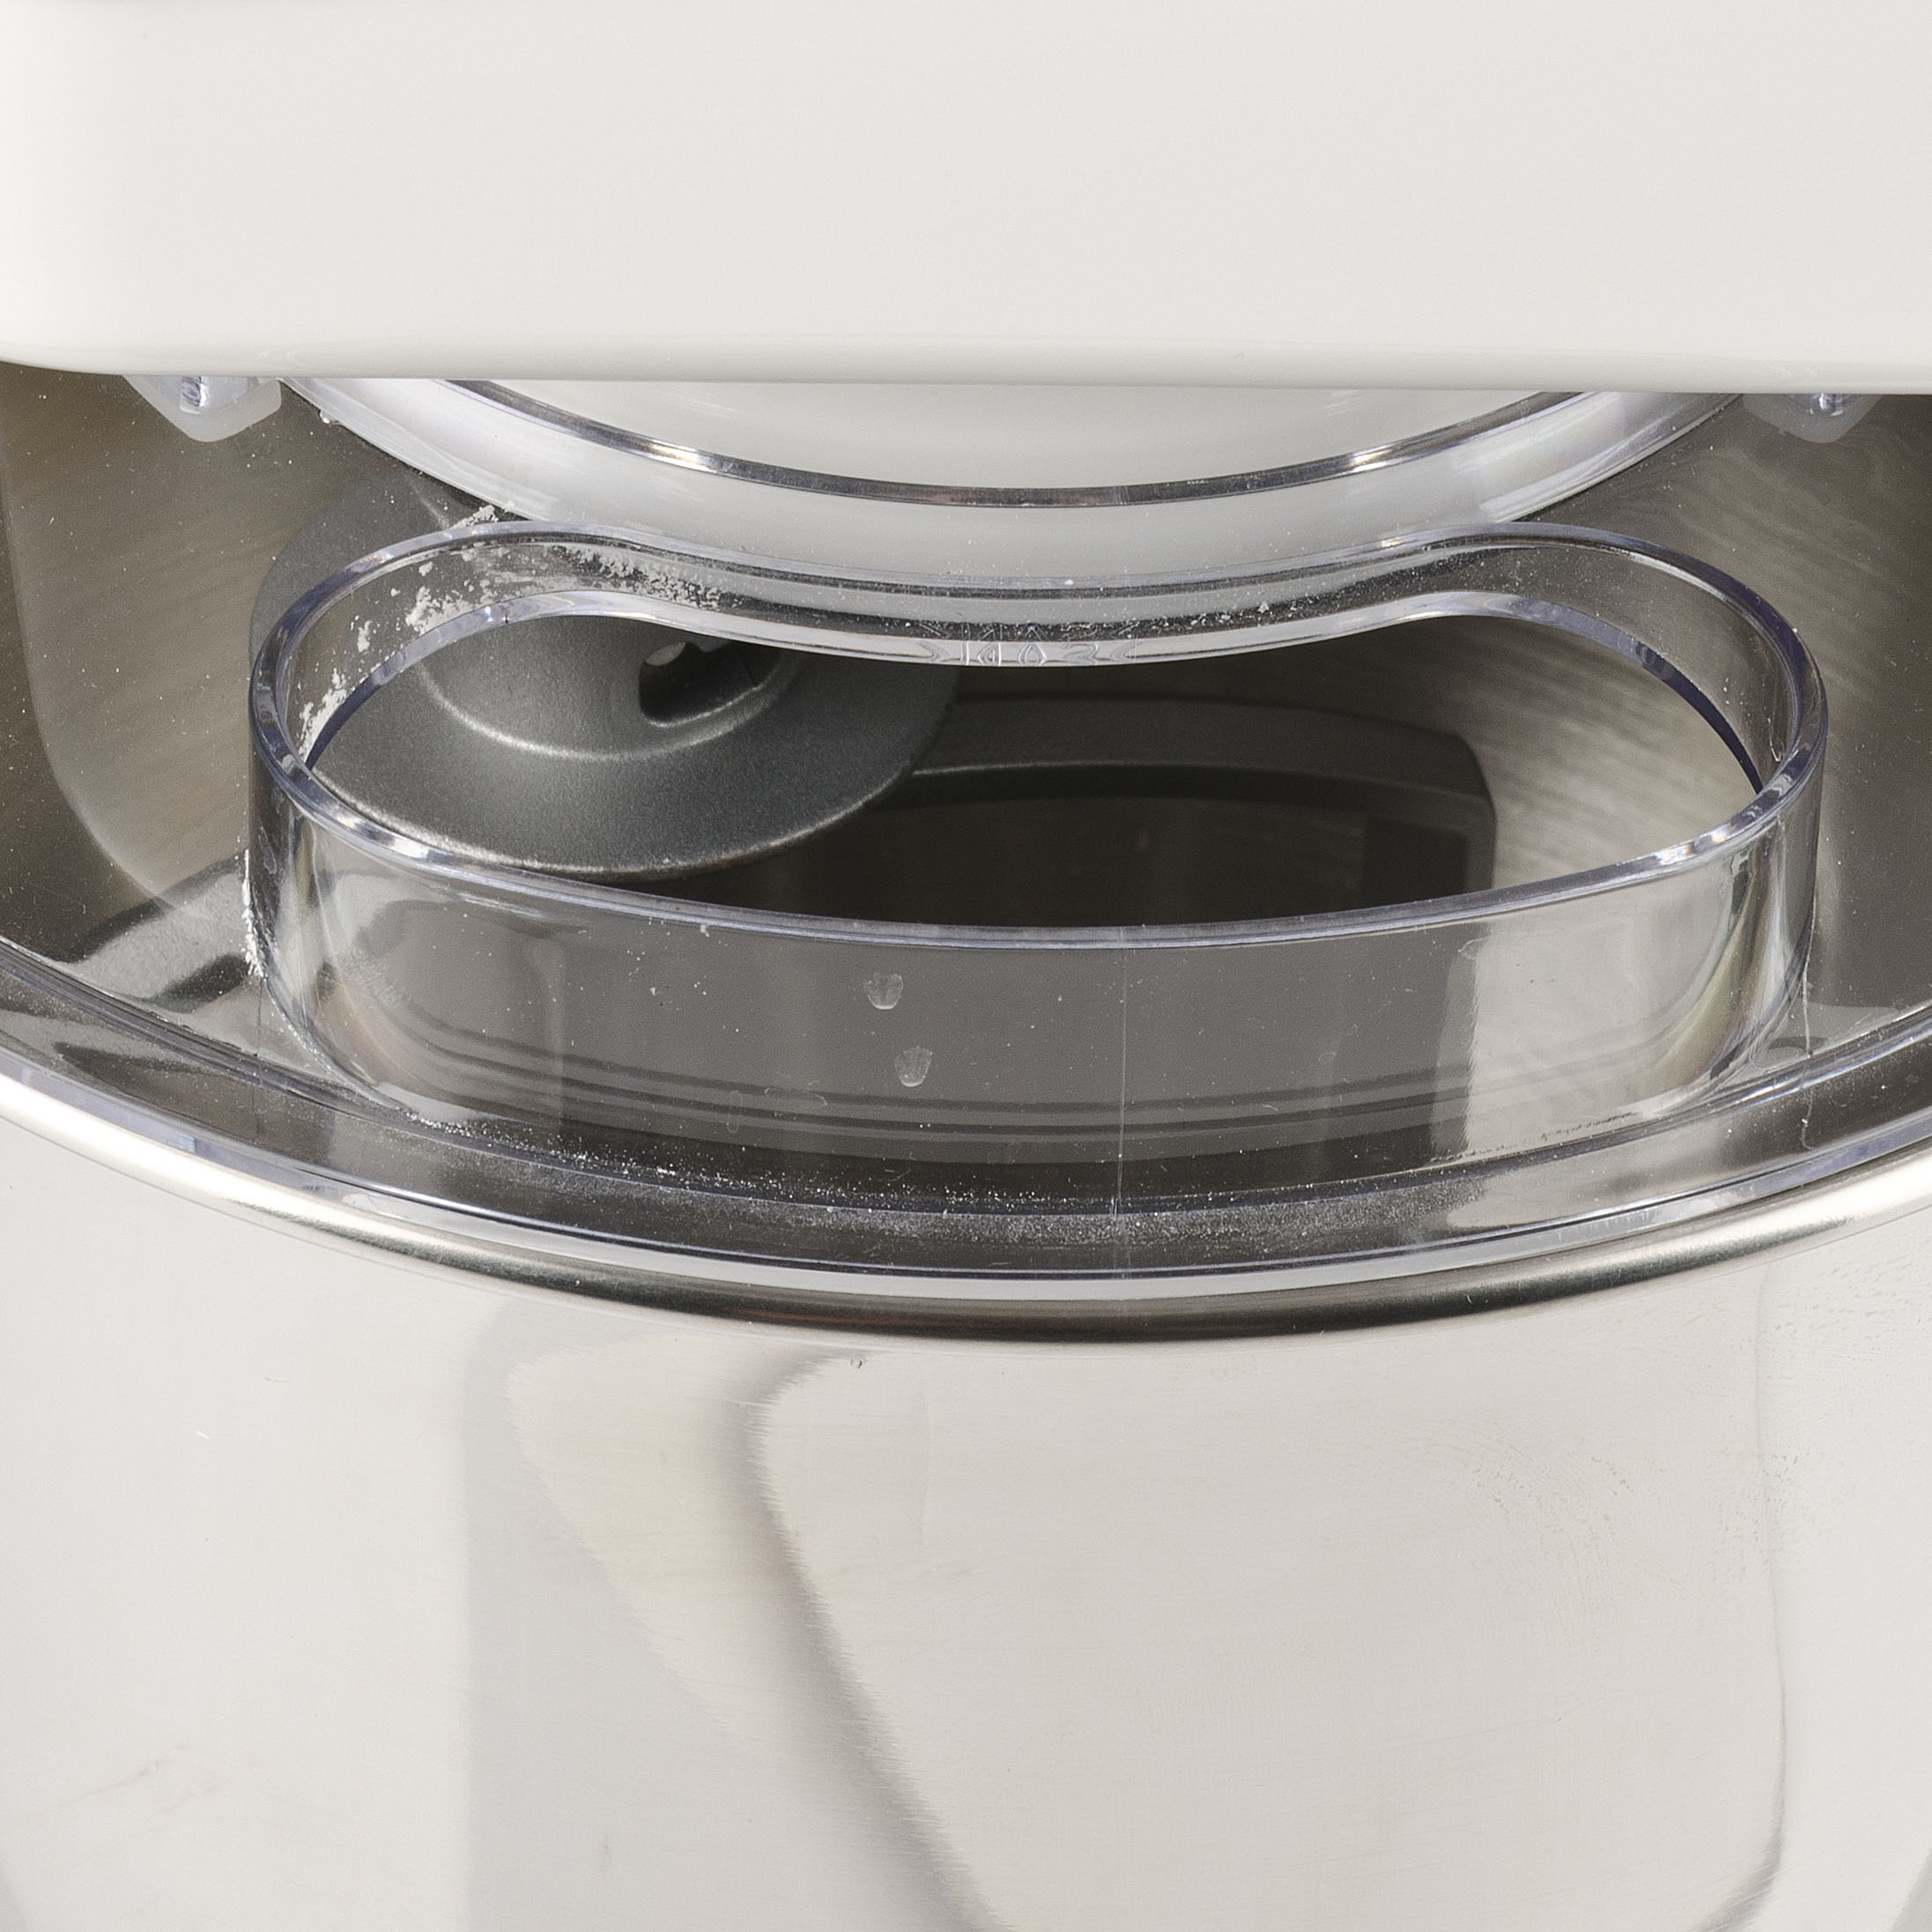 GIRMI IM3000 Küchenmaschine weiß (1300 Watt)